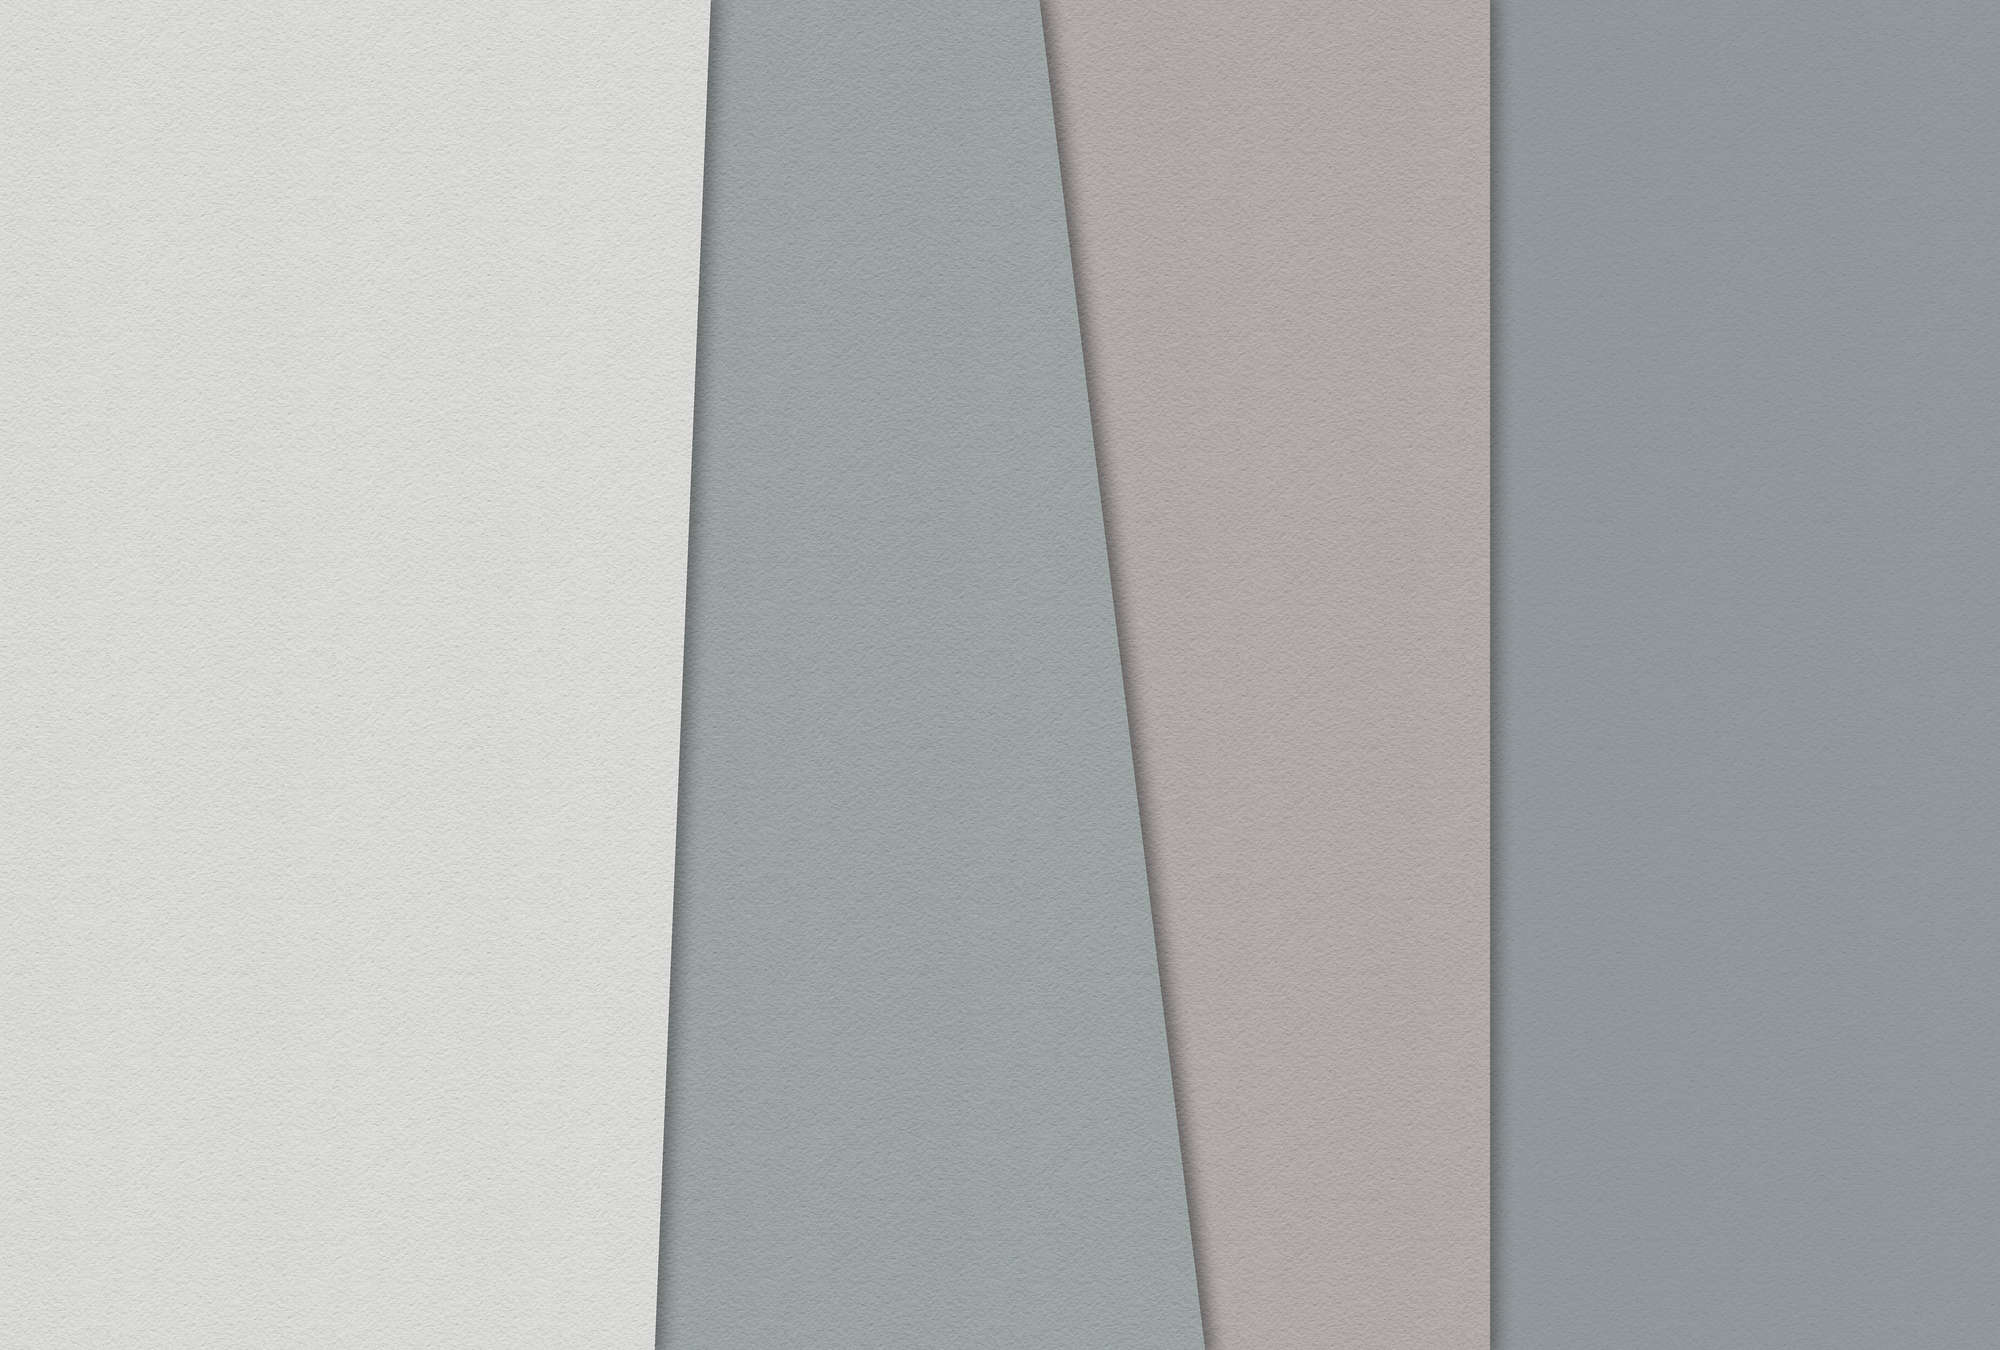             Papel estratificado 1 - Papel pintado gráfico con zonas de color en estructura de papel hecho a mano - Azul, Crema | Perla liso no tejido
        